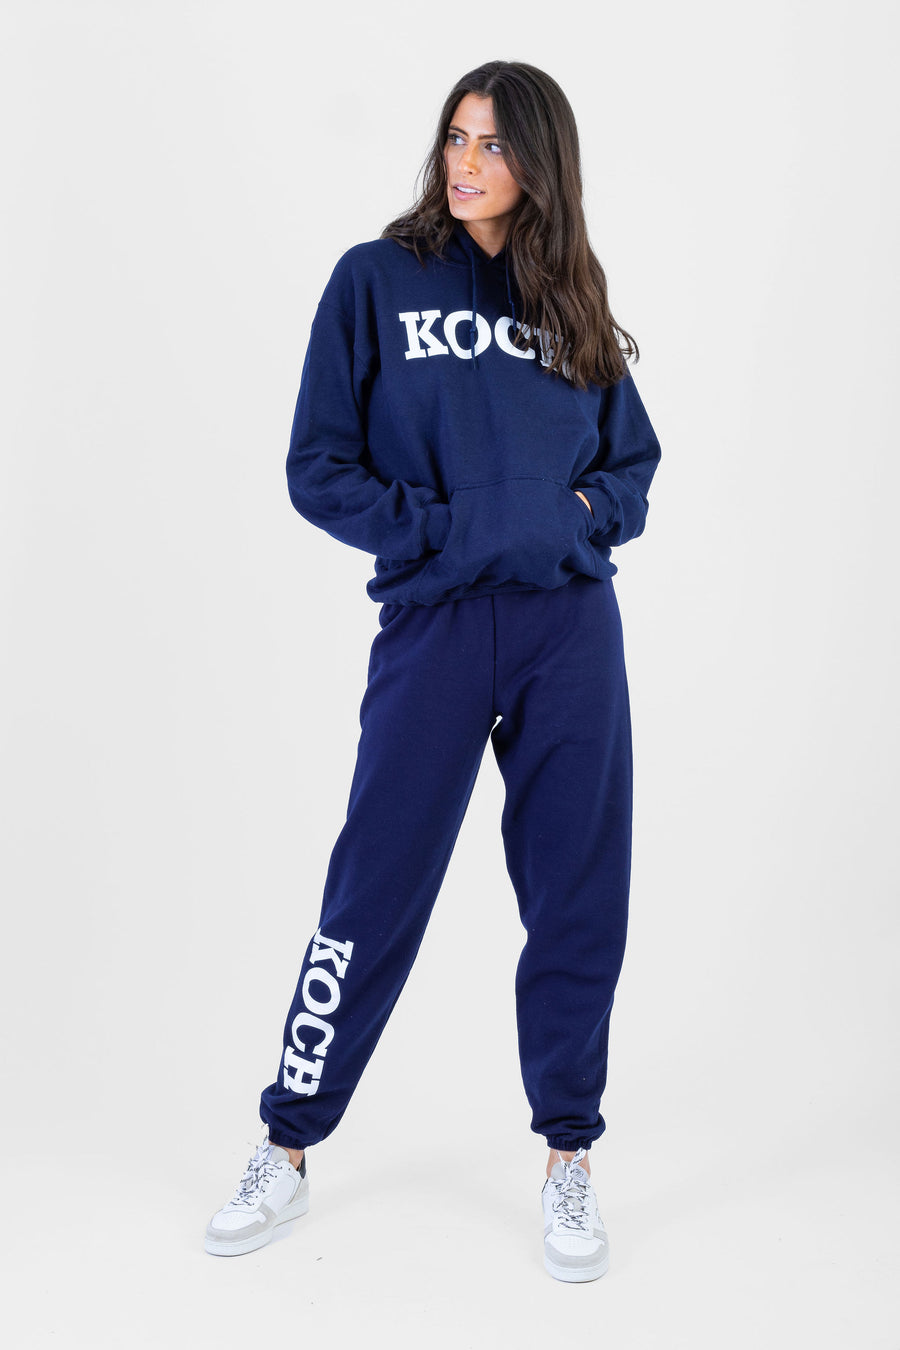 KOCH Classic Sweatsuit *Limited*Edition* – Shop KOCH